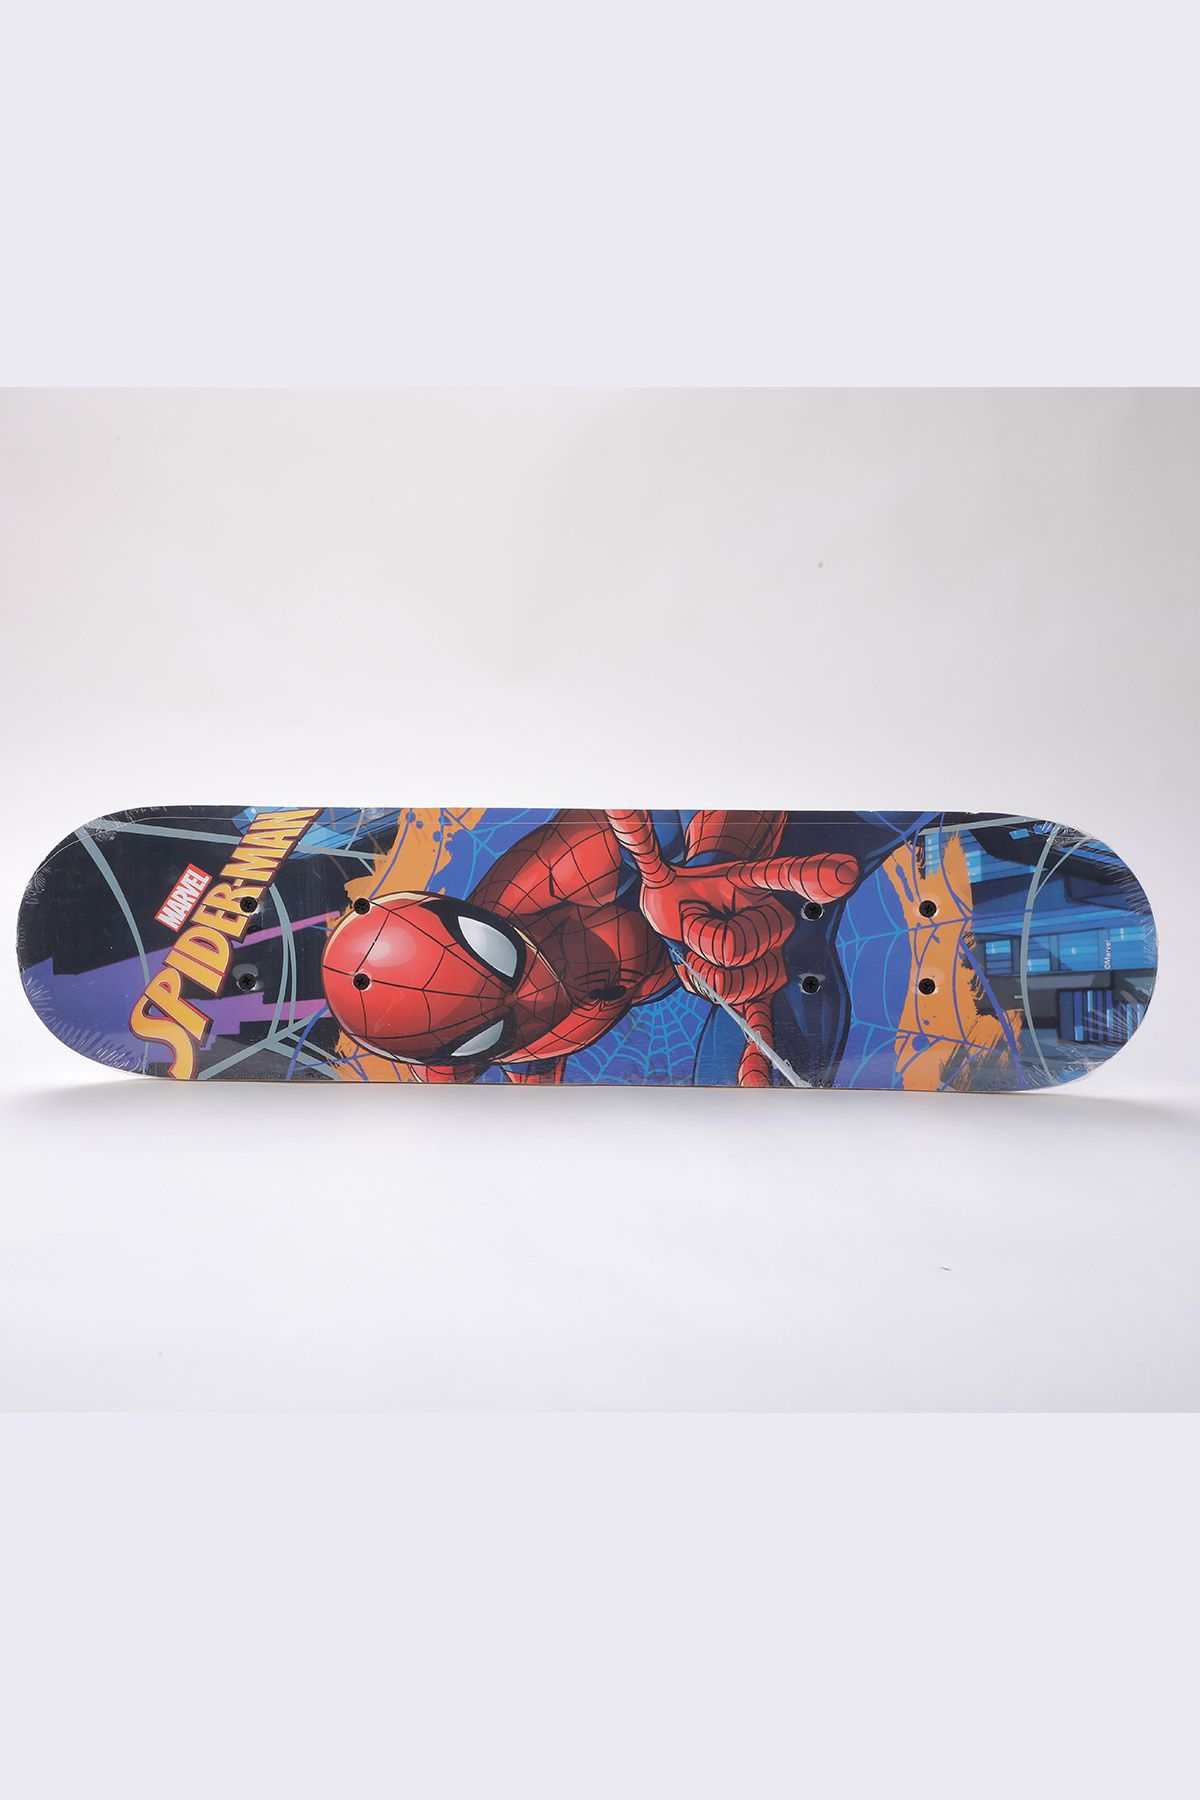 Generic Planche à Roulettes De Surf De Rue, Skateboard Spider Man